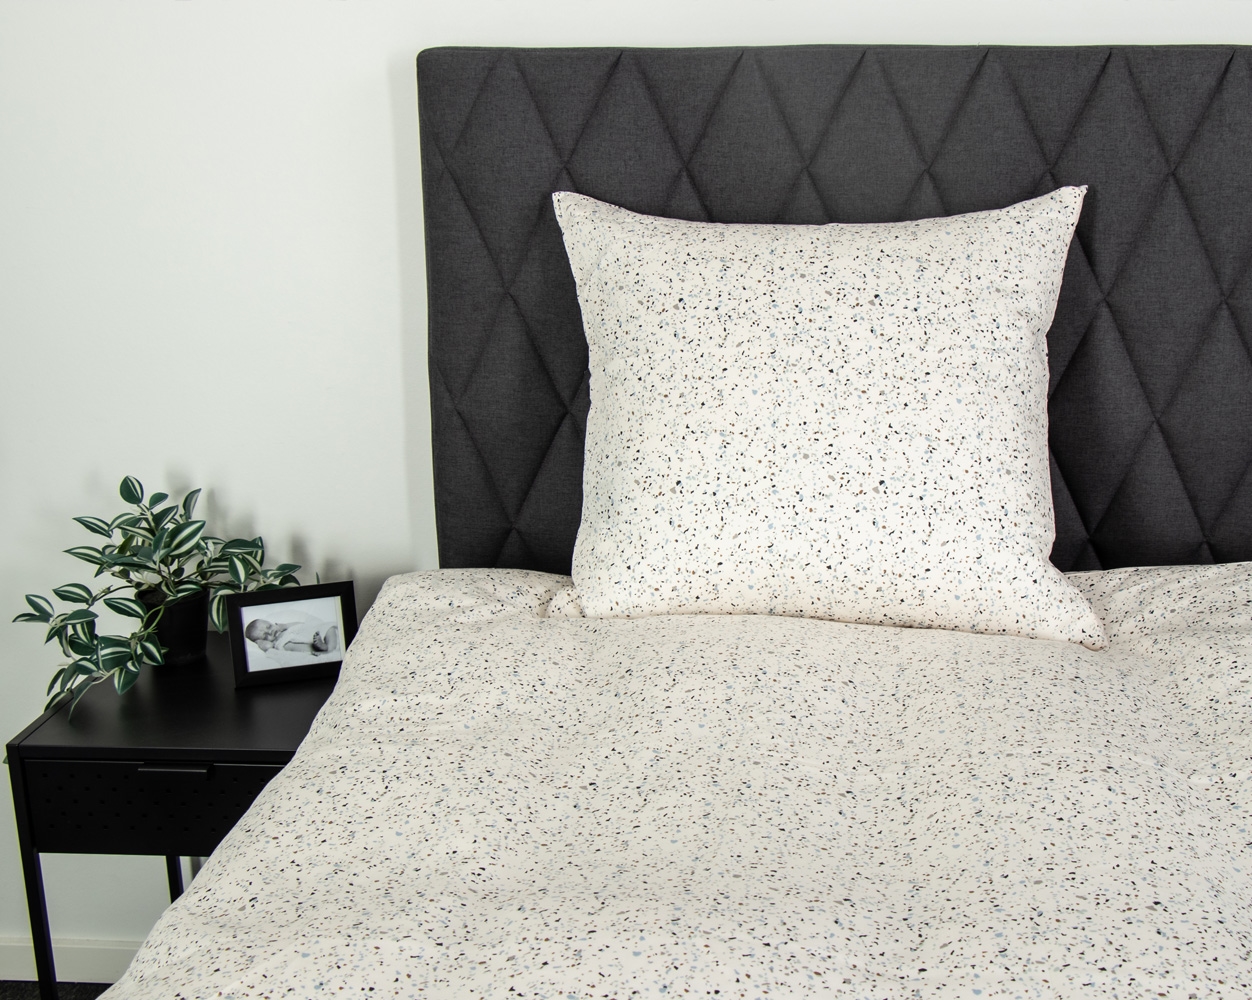 Dobbelt sengetøj • 200x200 cm • Bomuldssatin